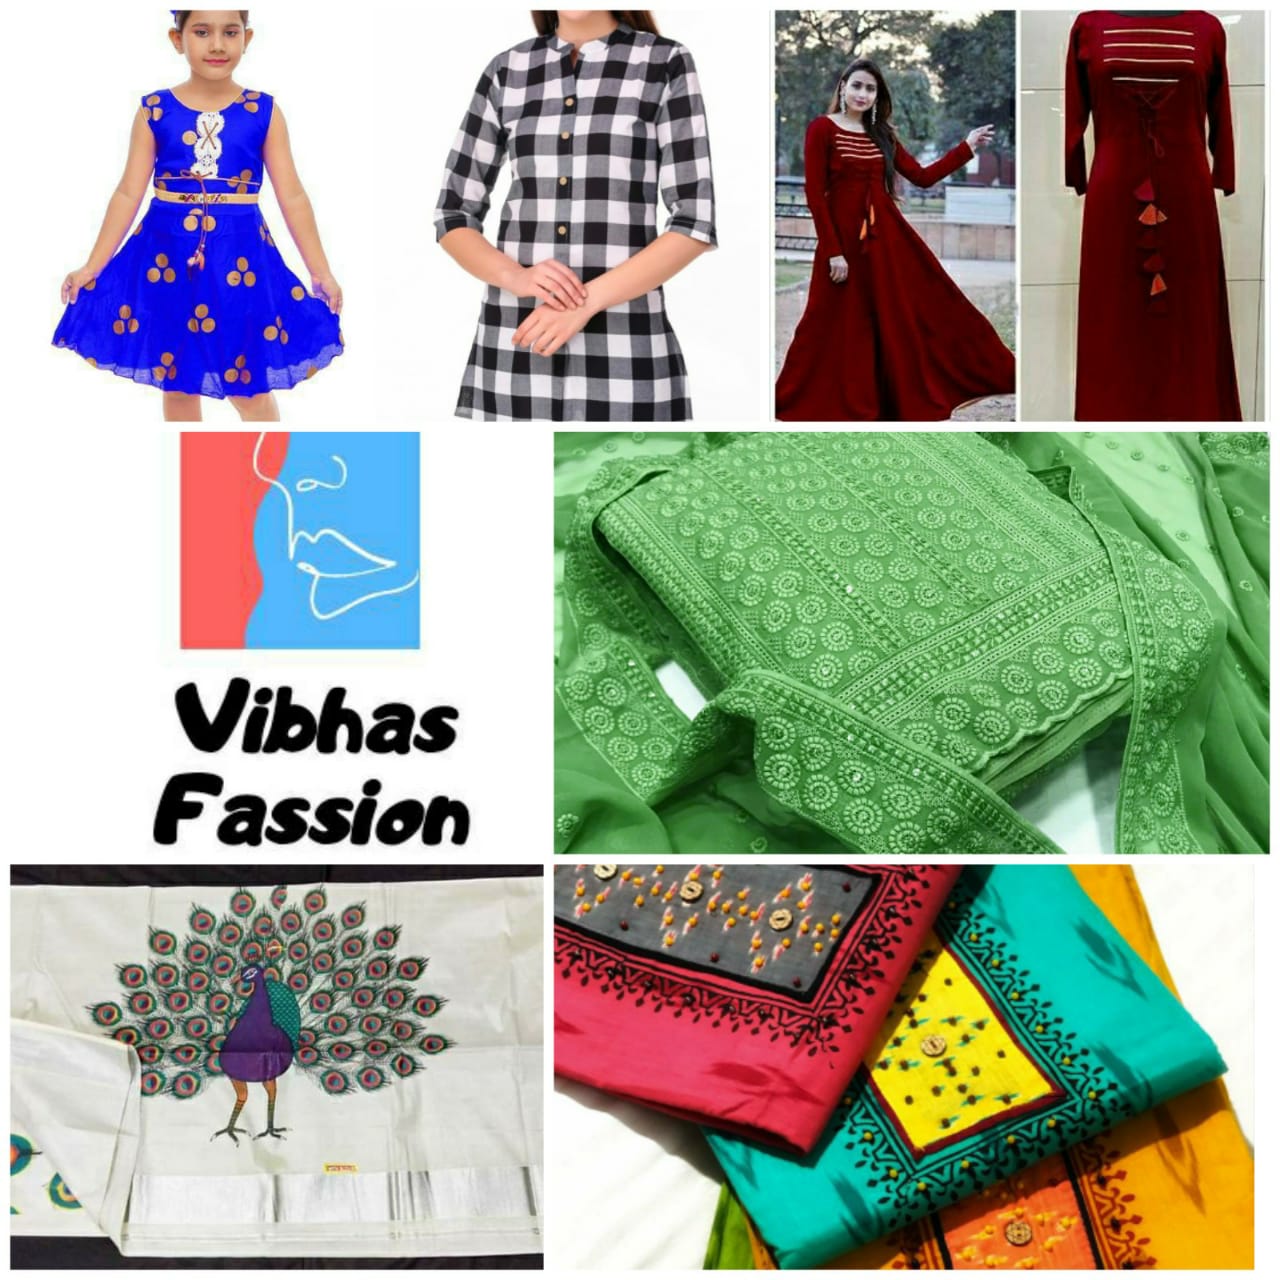 Vibhas Fashion - Online...